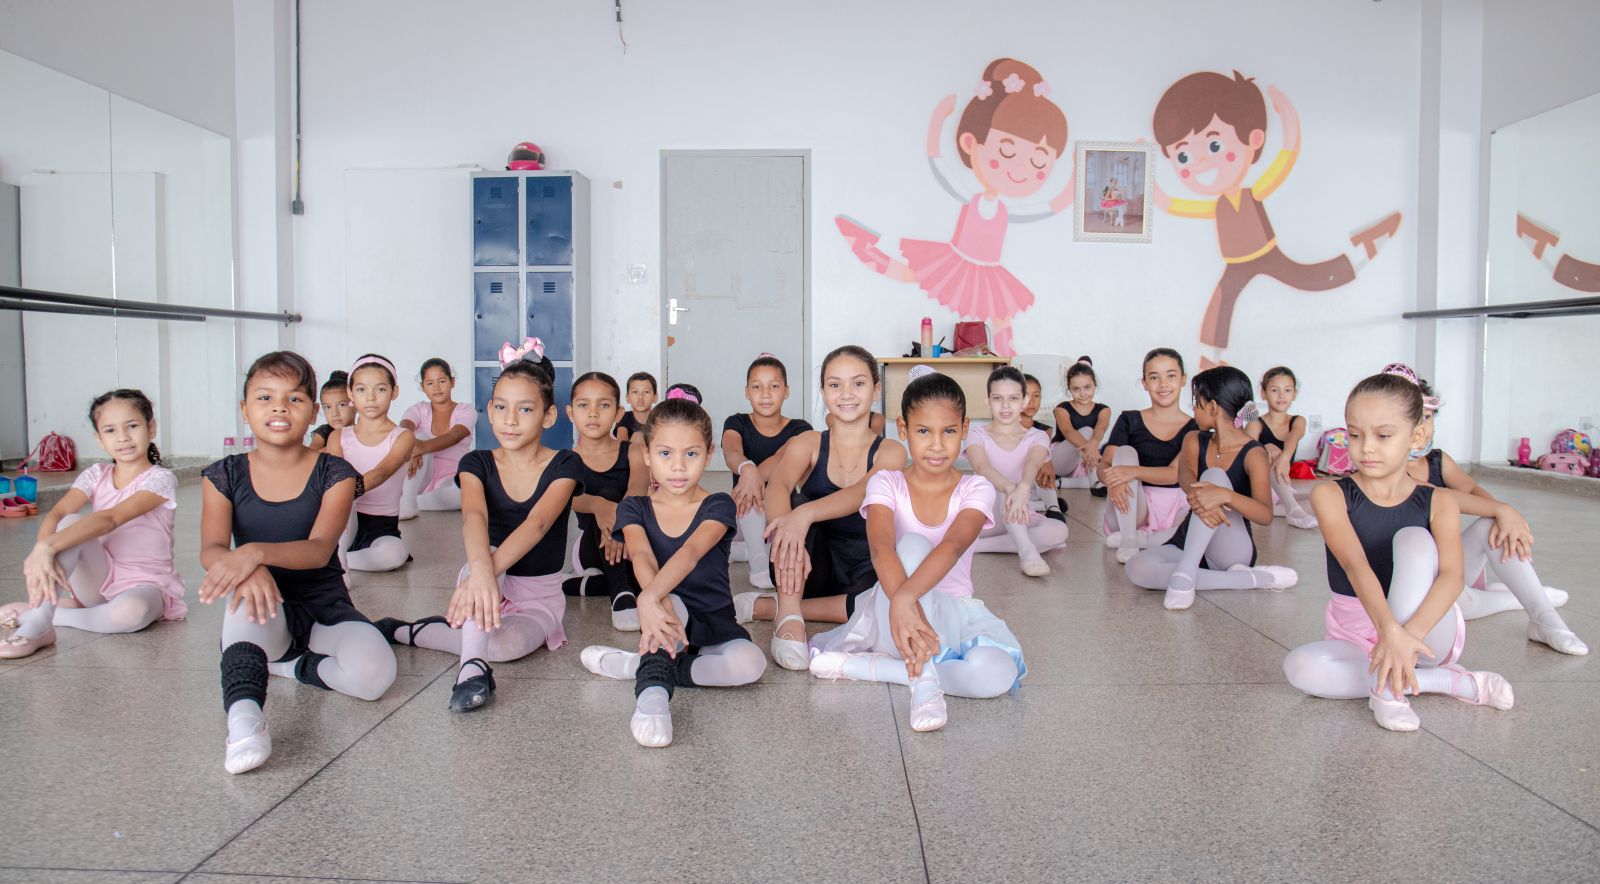 PRAÇA CEU: Alunos de ballet do projeto têm sala de aula reformada e recebem novos uniformes